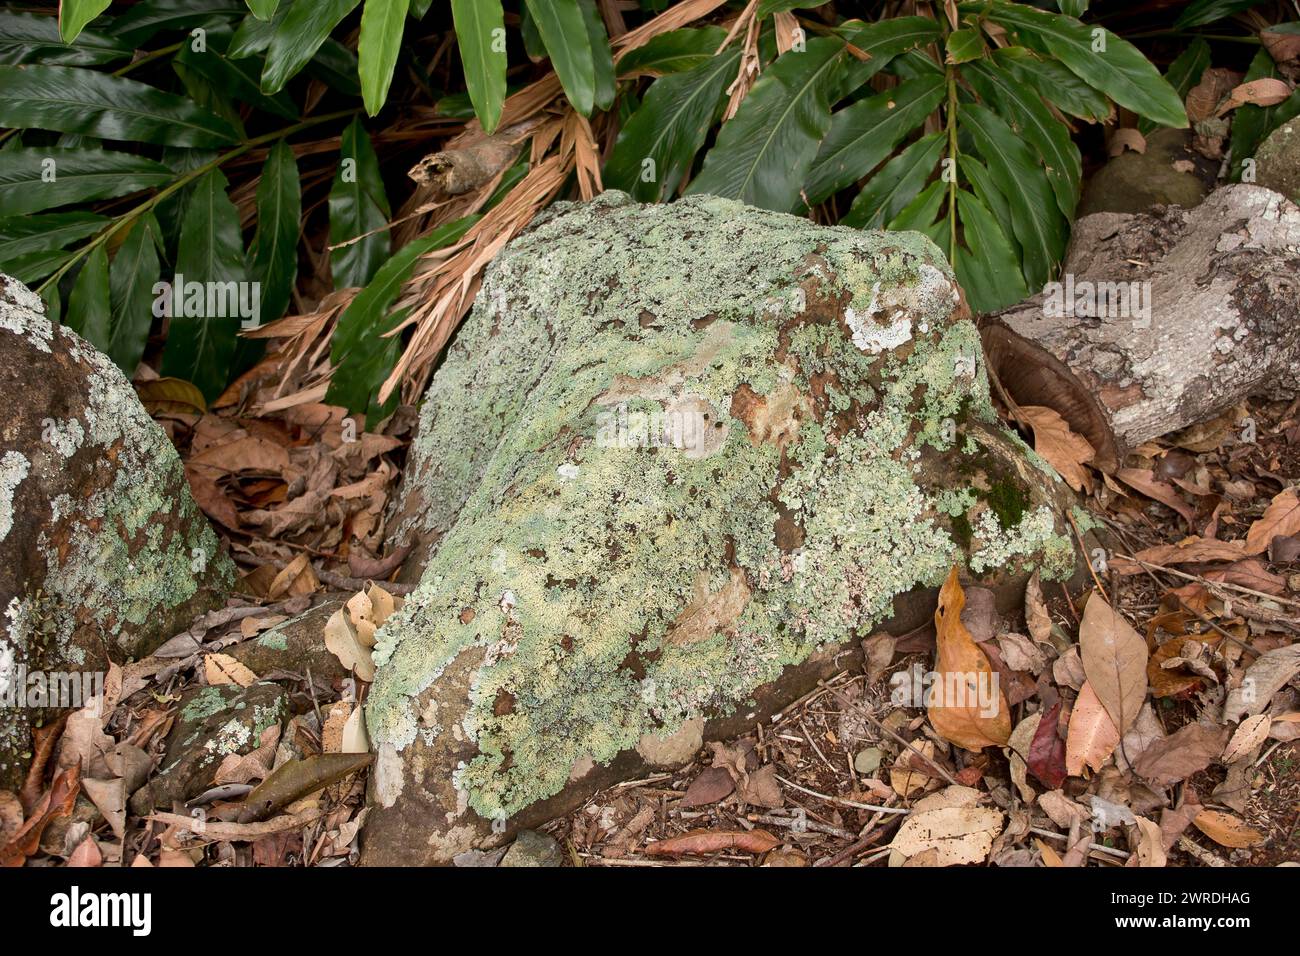 Blocs de basalte sur le sol de la forêt tropicale humide subtropicale dans le Queensland, Australie. Roches presque entièrement recouvertes de lichens vert pâle et blanc. Banque D'Images